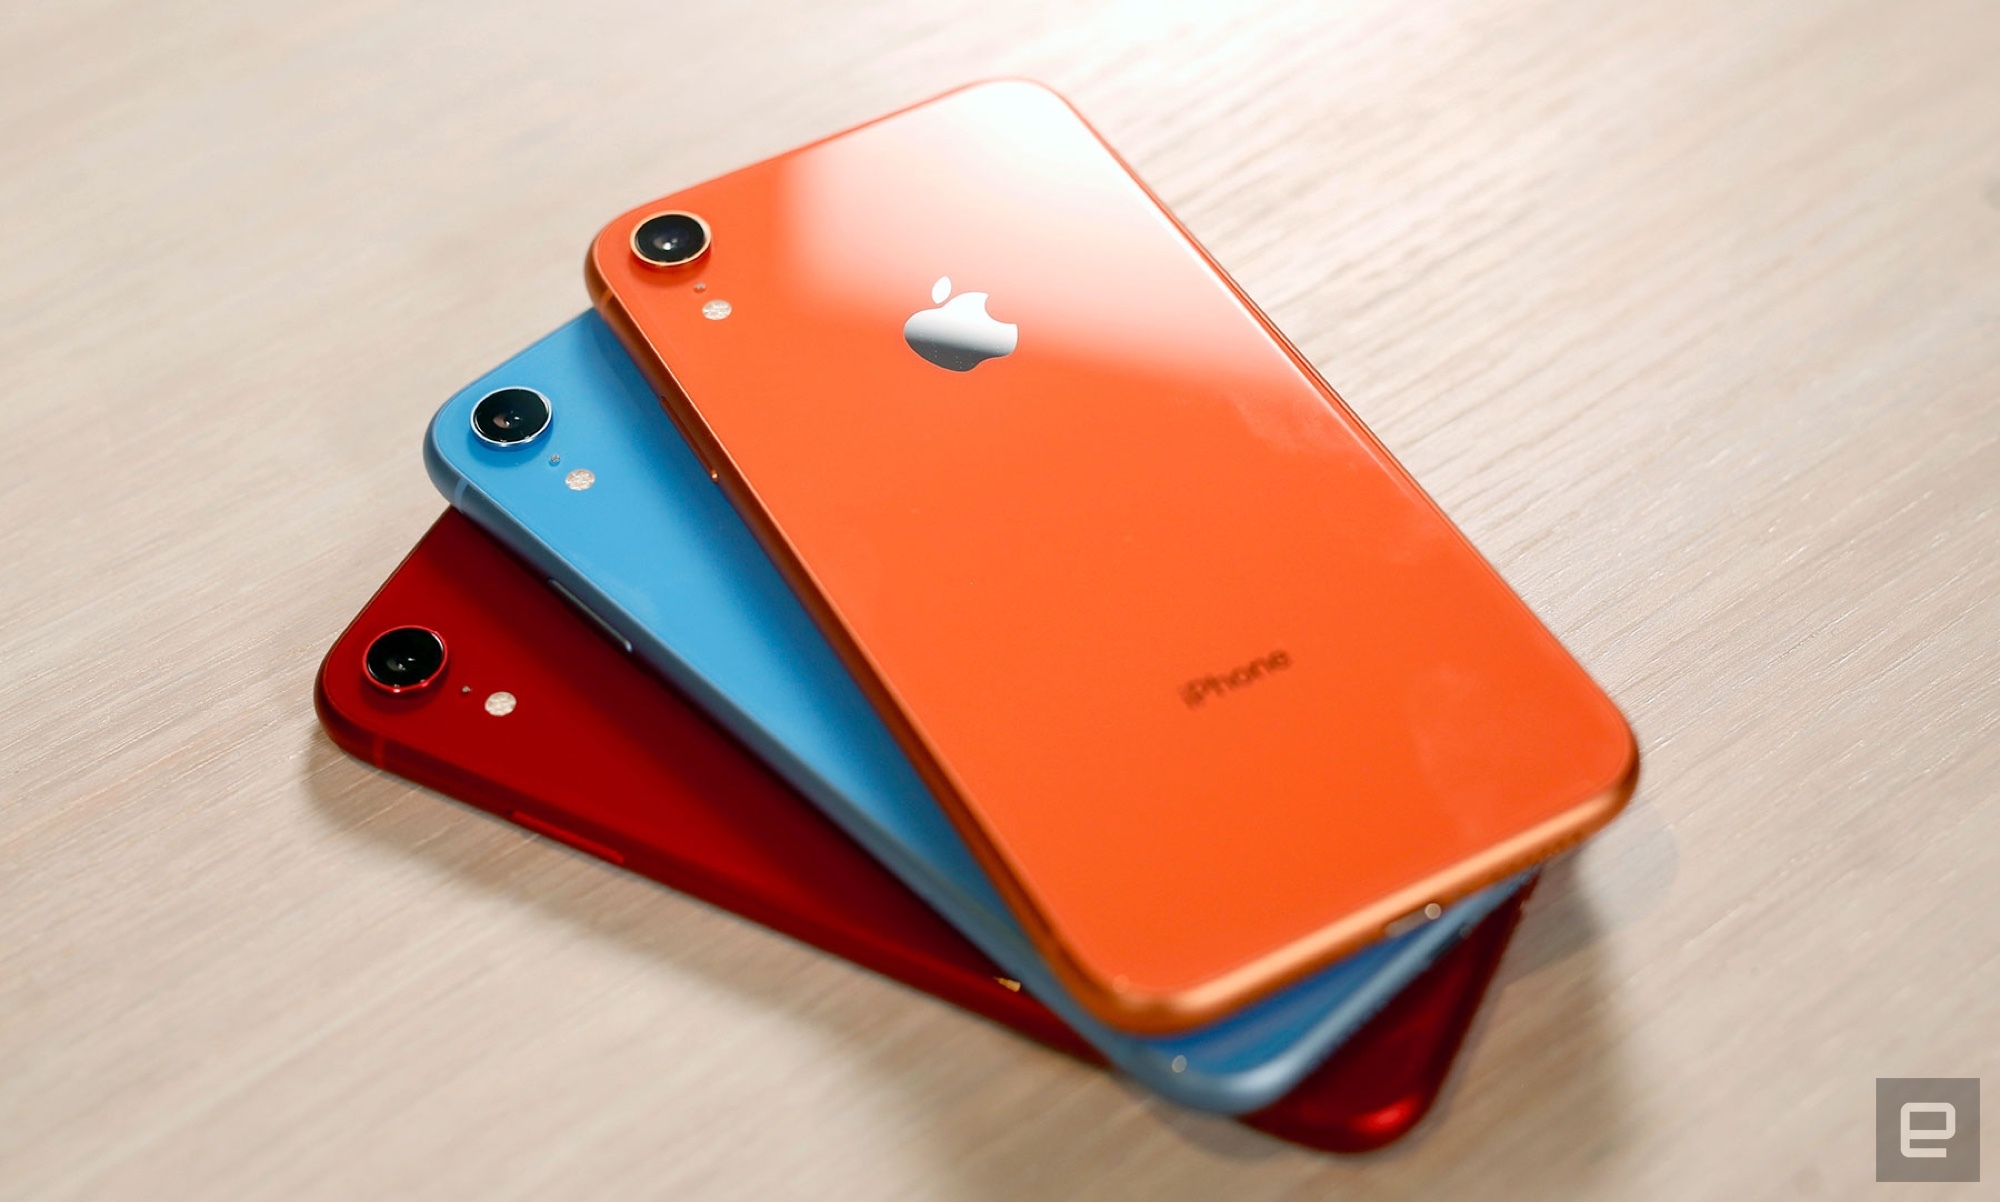 Tuần này có gì: iPhone XR mở bán, Huawei Mate 20 và Mate 20 Pro ra mắt tại Việt Nam, Mi Mix 3 trình làng,…